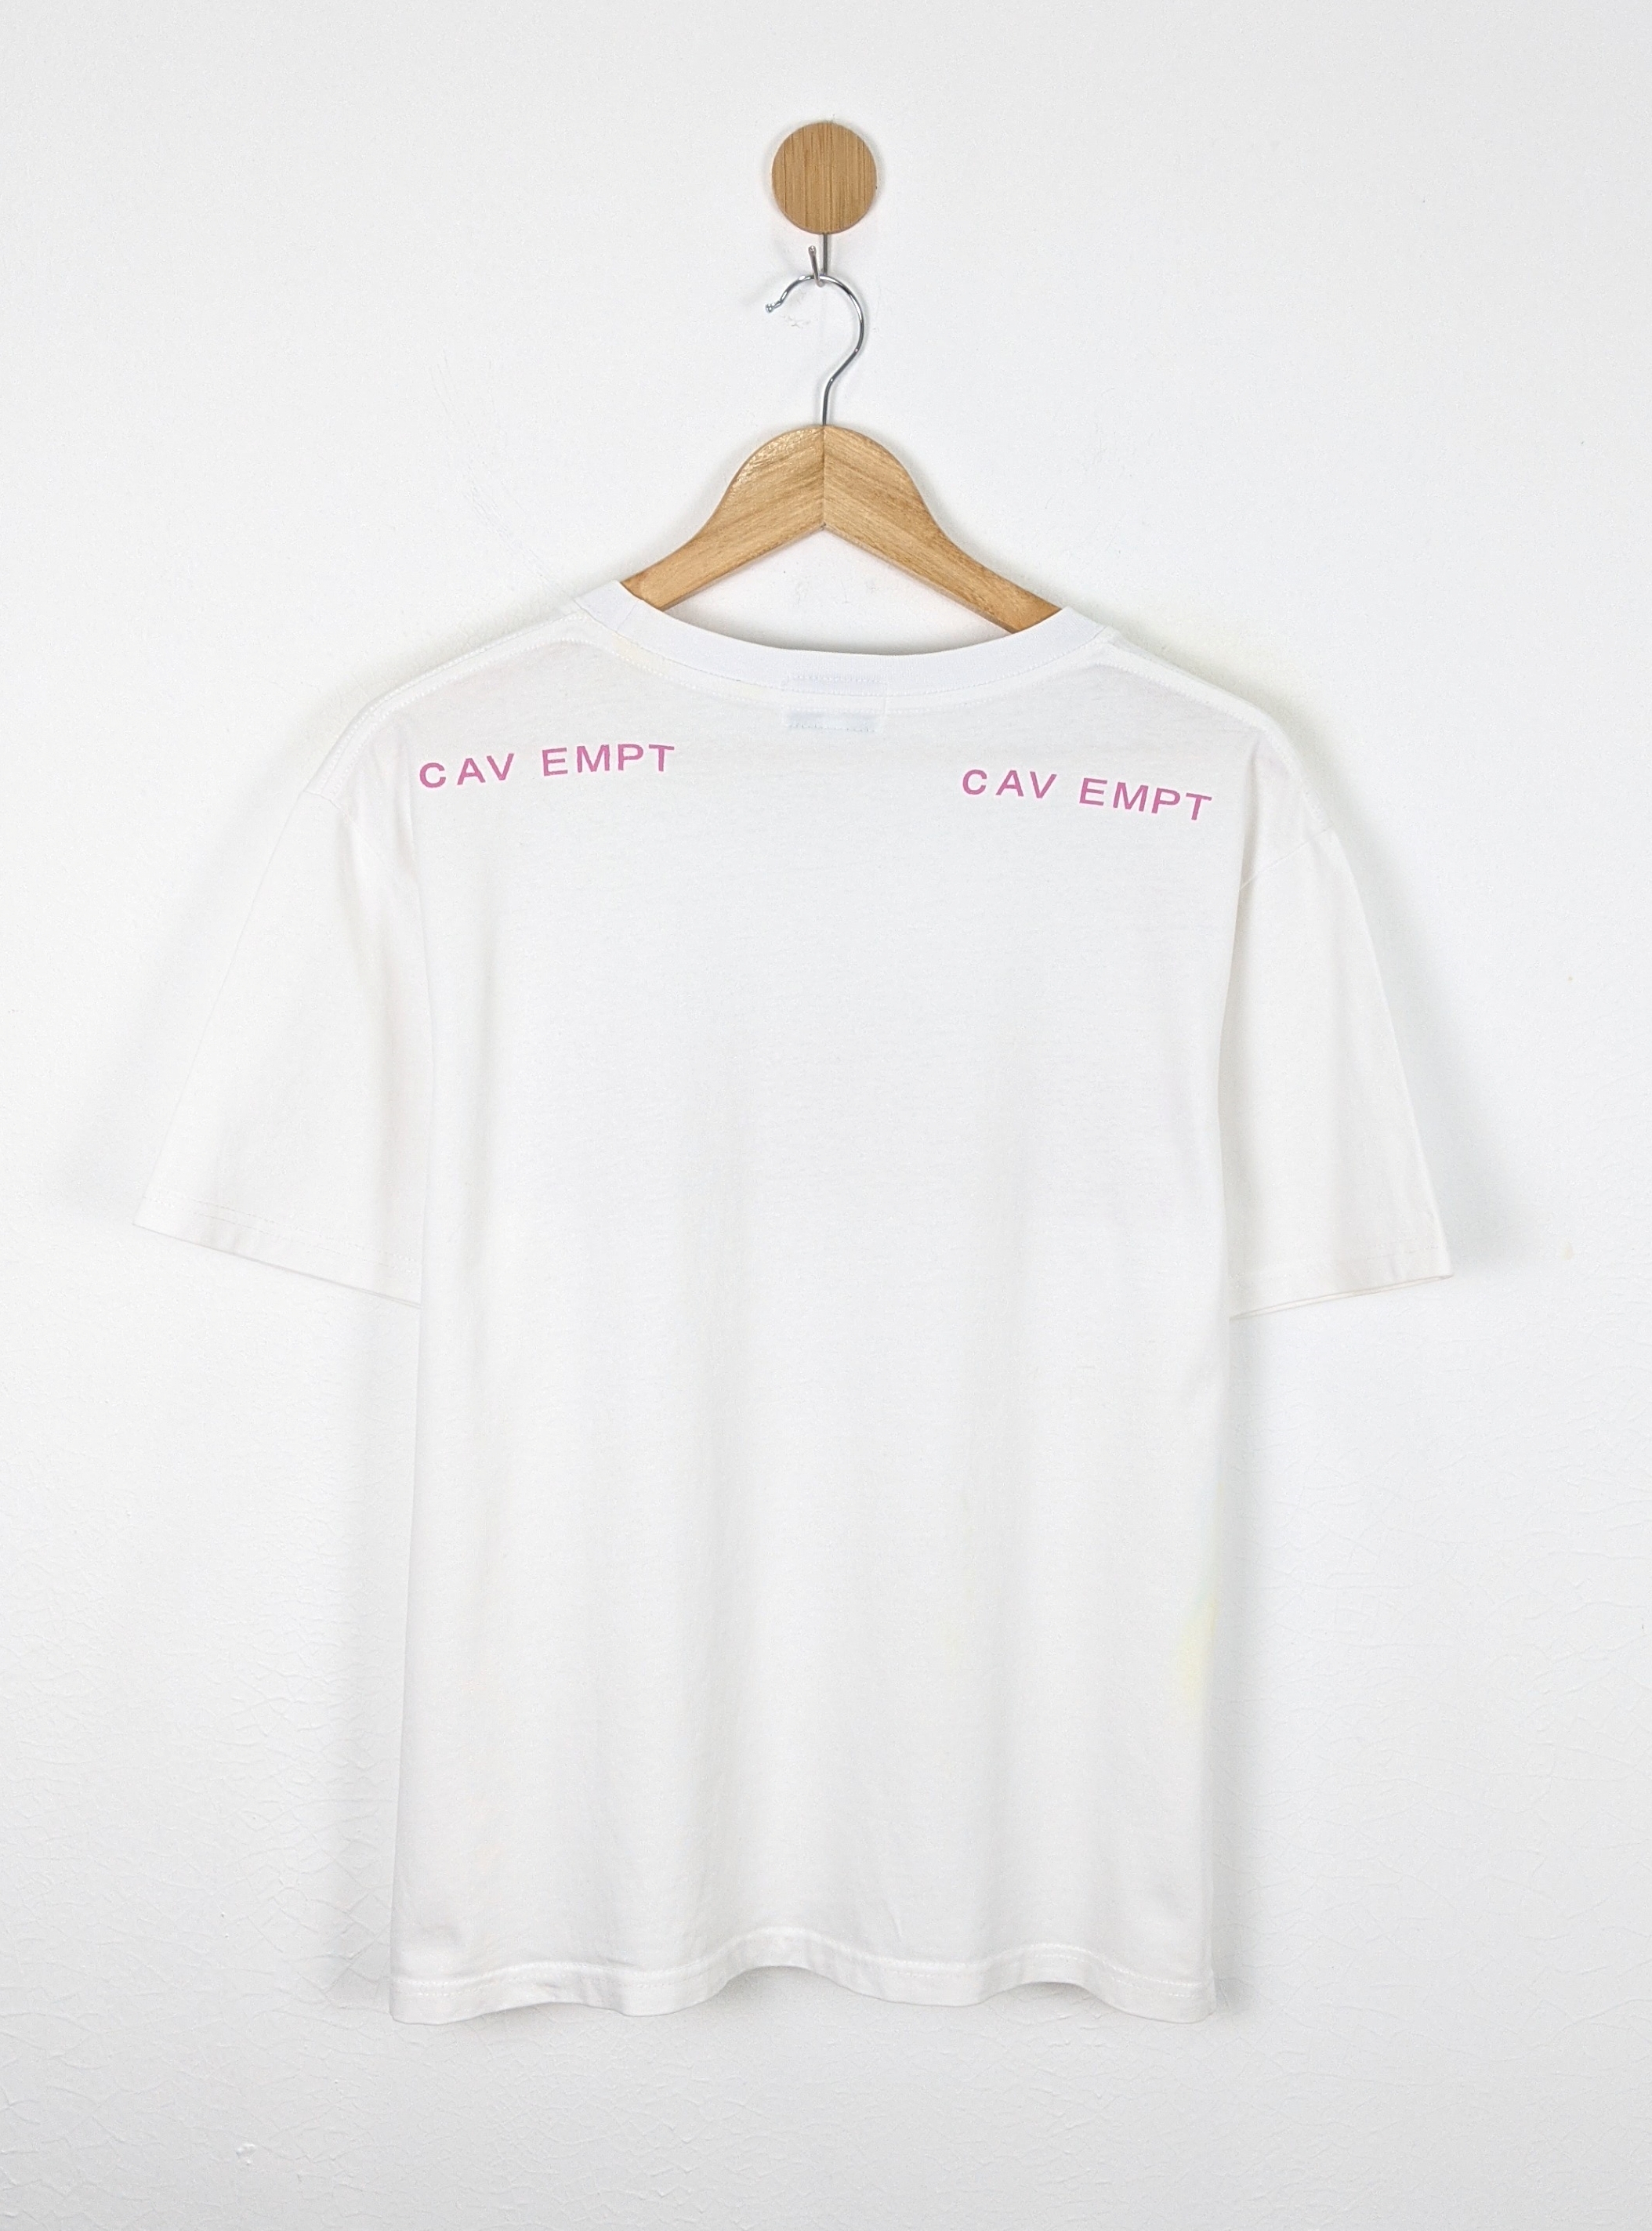 Cav Empt shirt - 3